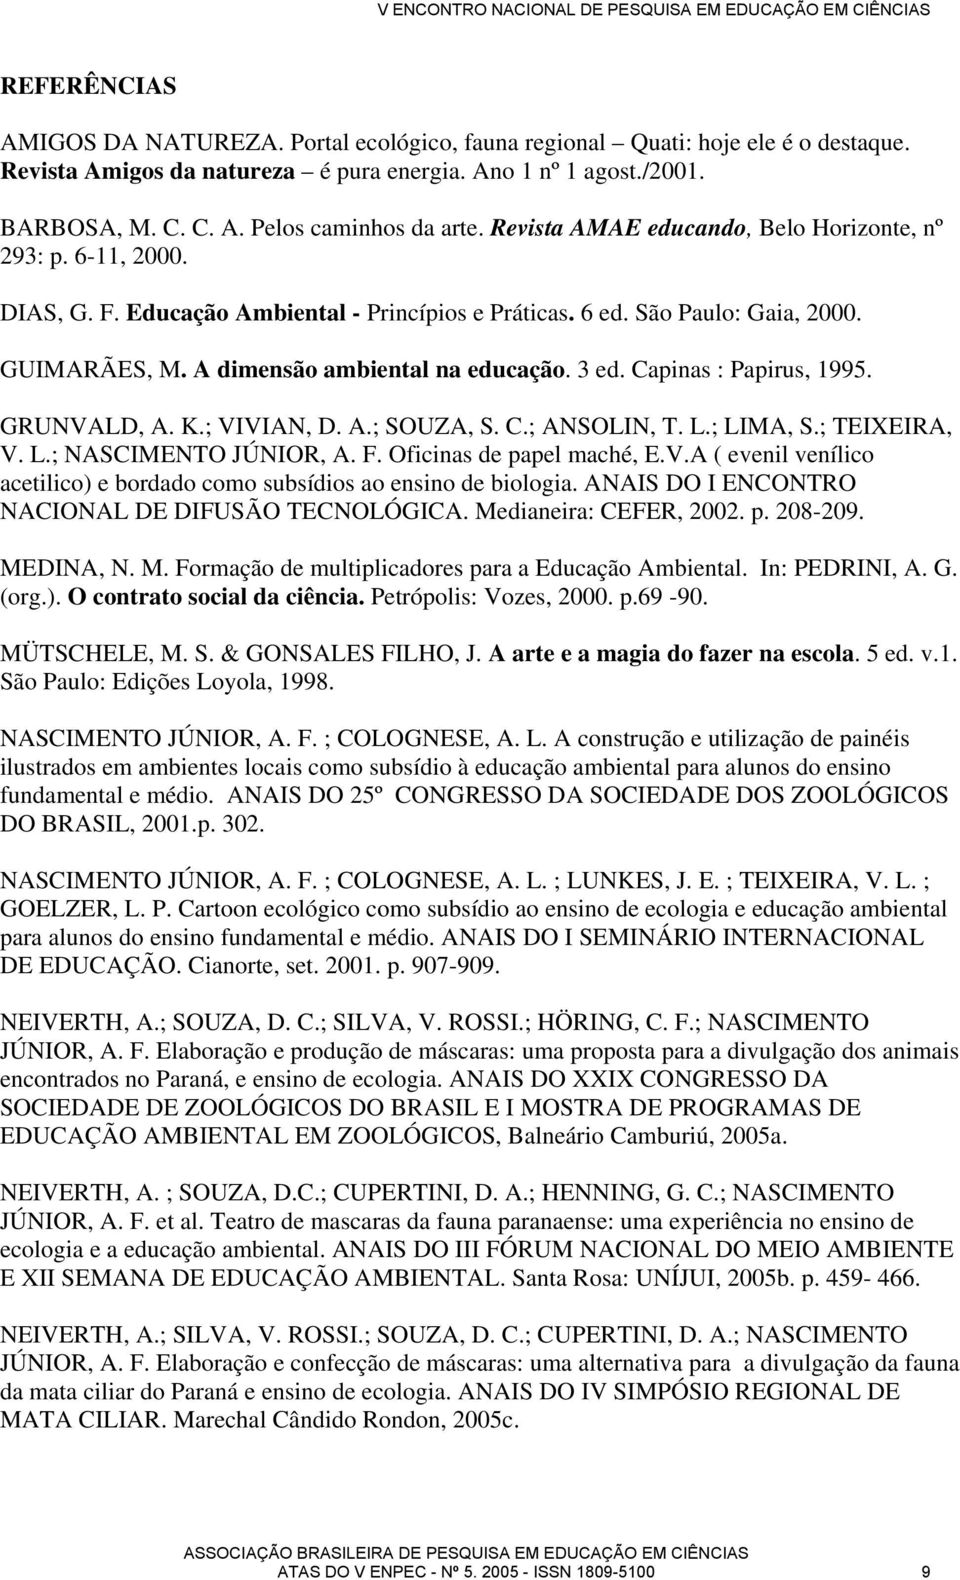 Capinas : Papirus, 1995. GRUNVALD, A. K.; VIVIAN, D. A.; SOUZA, S. C.; ANSOLIN, T. L.; LIMA, S.; TEIXEIRA, V. L.; NASCIMENTO JÚNIOR, A. F. Oficinas de papel maché, E.V.A ( evenil venílico acetilico) e bordado como subsídios ao ensino de biologia.